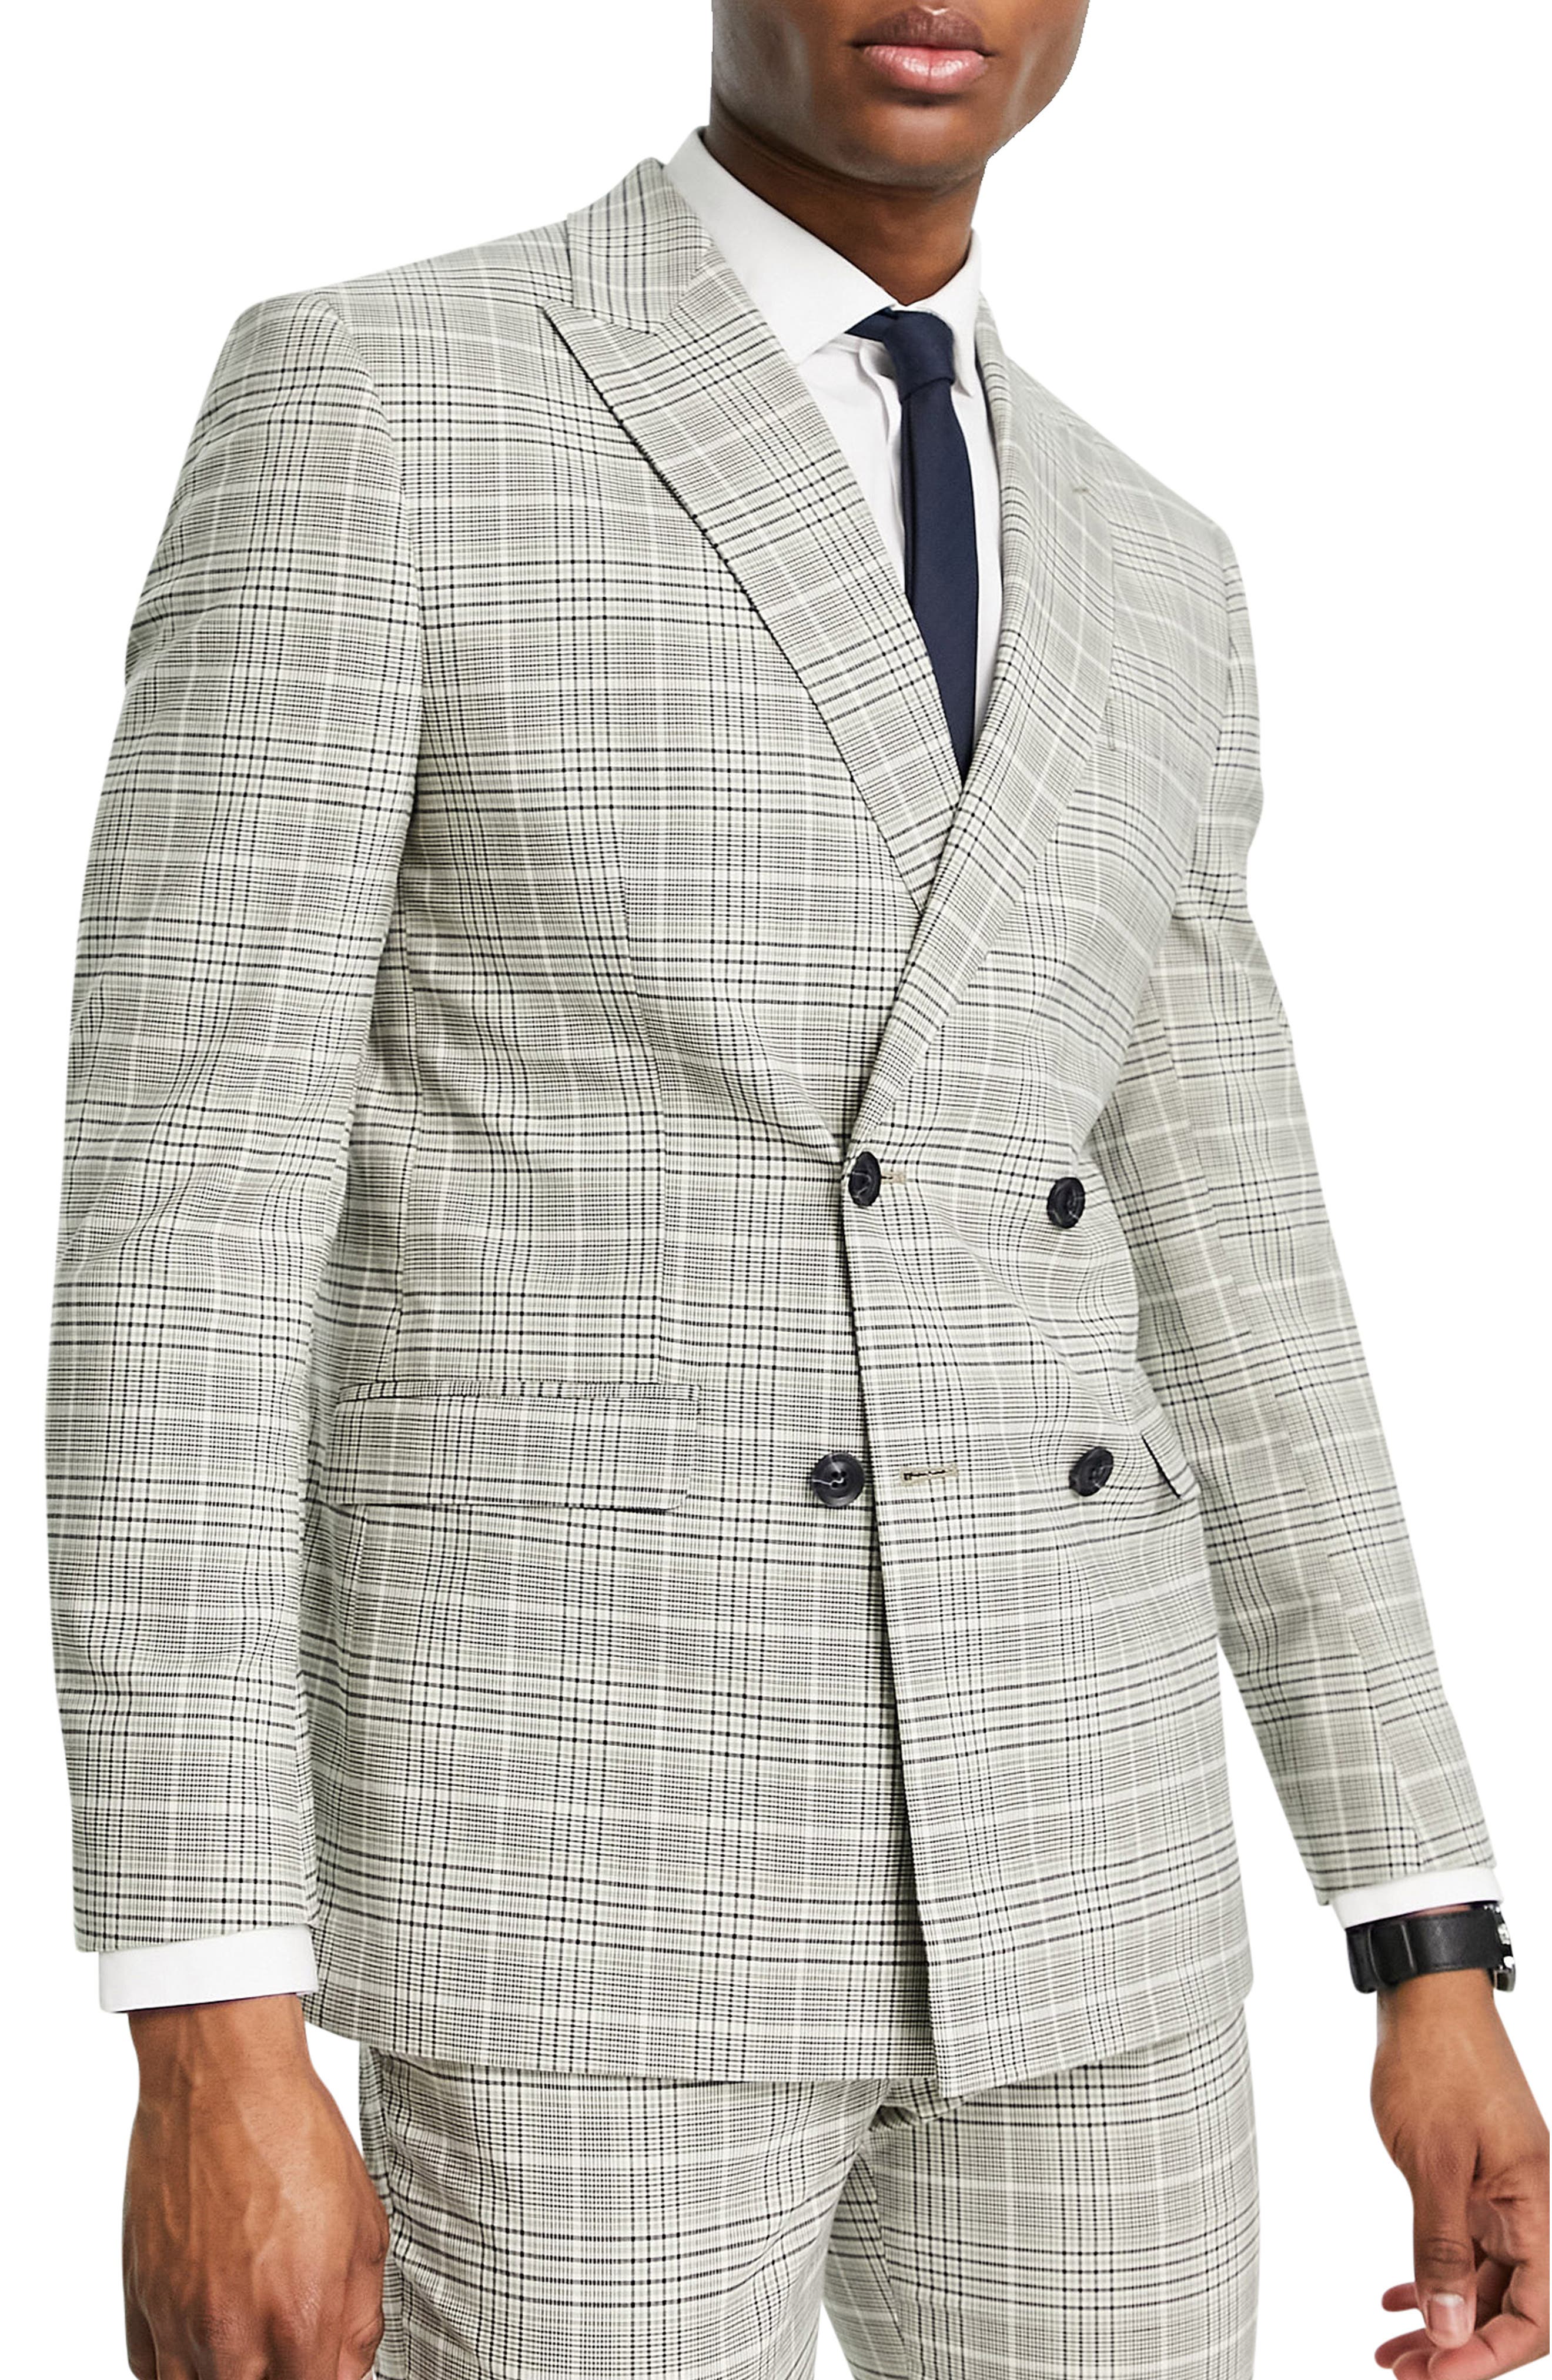 トップマン Topman メンズ スーツ・ジャケット アウター Skinny Double Breasted Suit Jacket In Grey  Check ライトグレー cLs8nvmZcJ, メンズファッション - www.cosmoraj.com